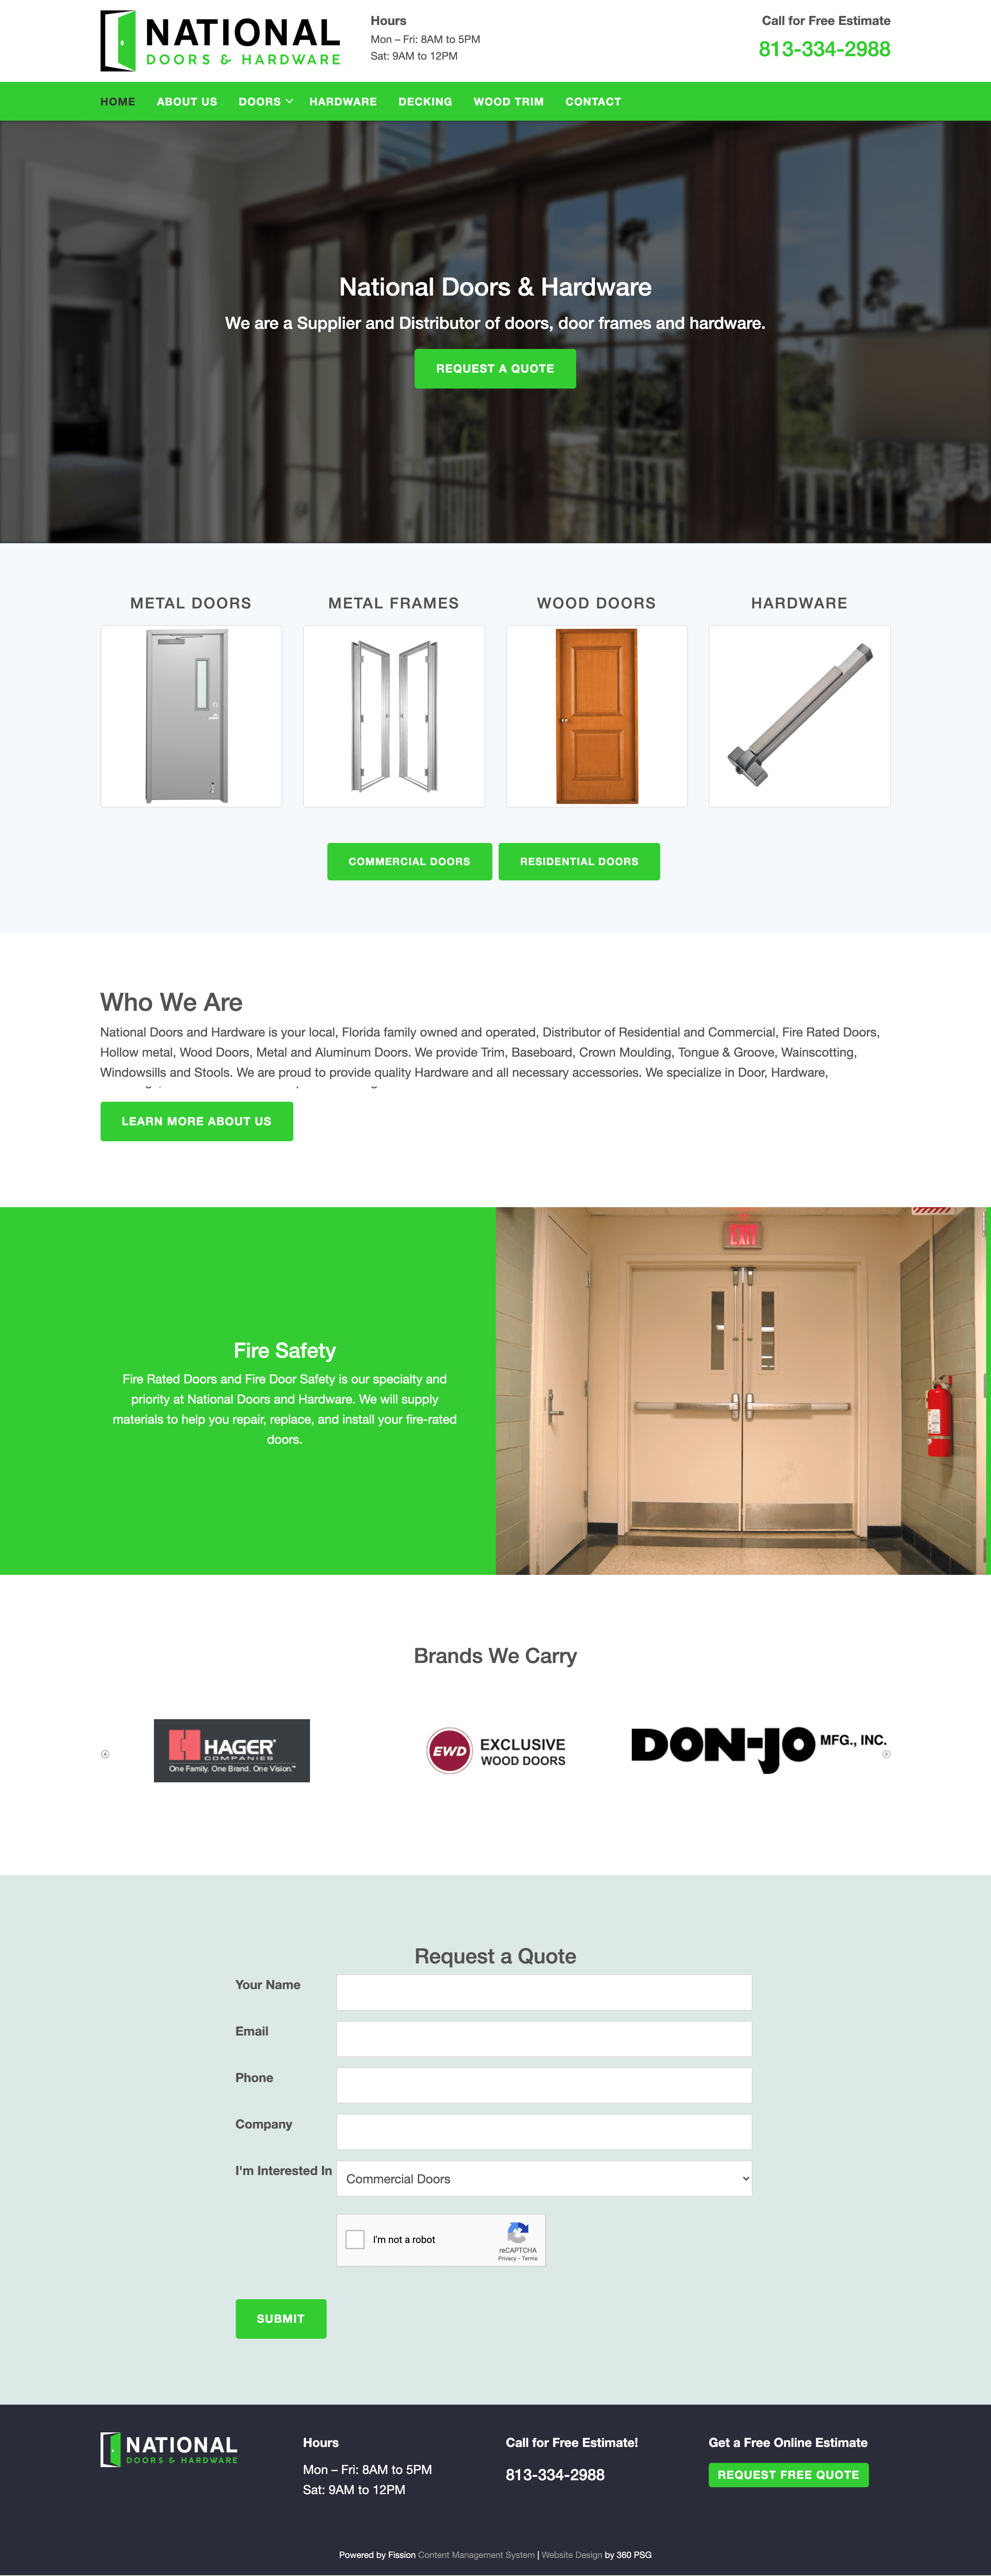 National Doors & Hardware Website - Desktop